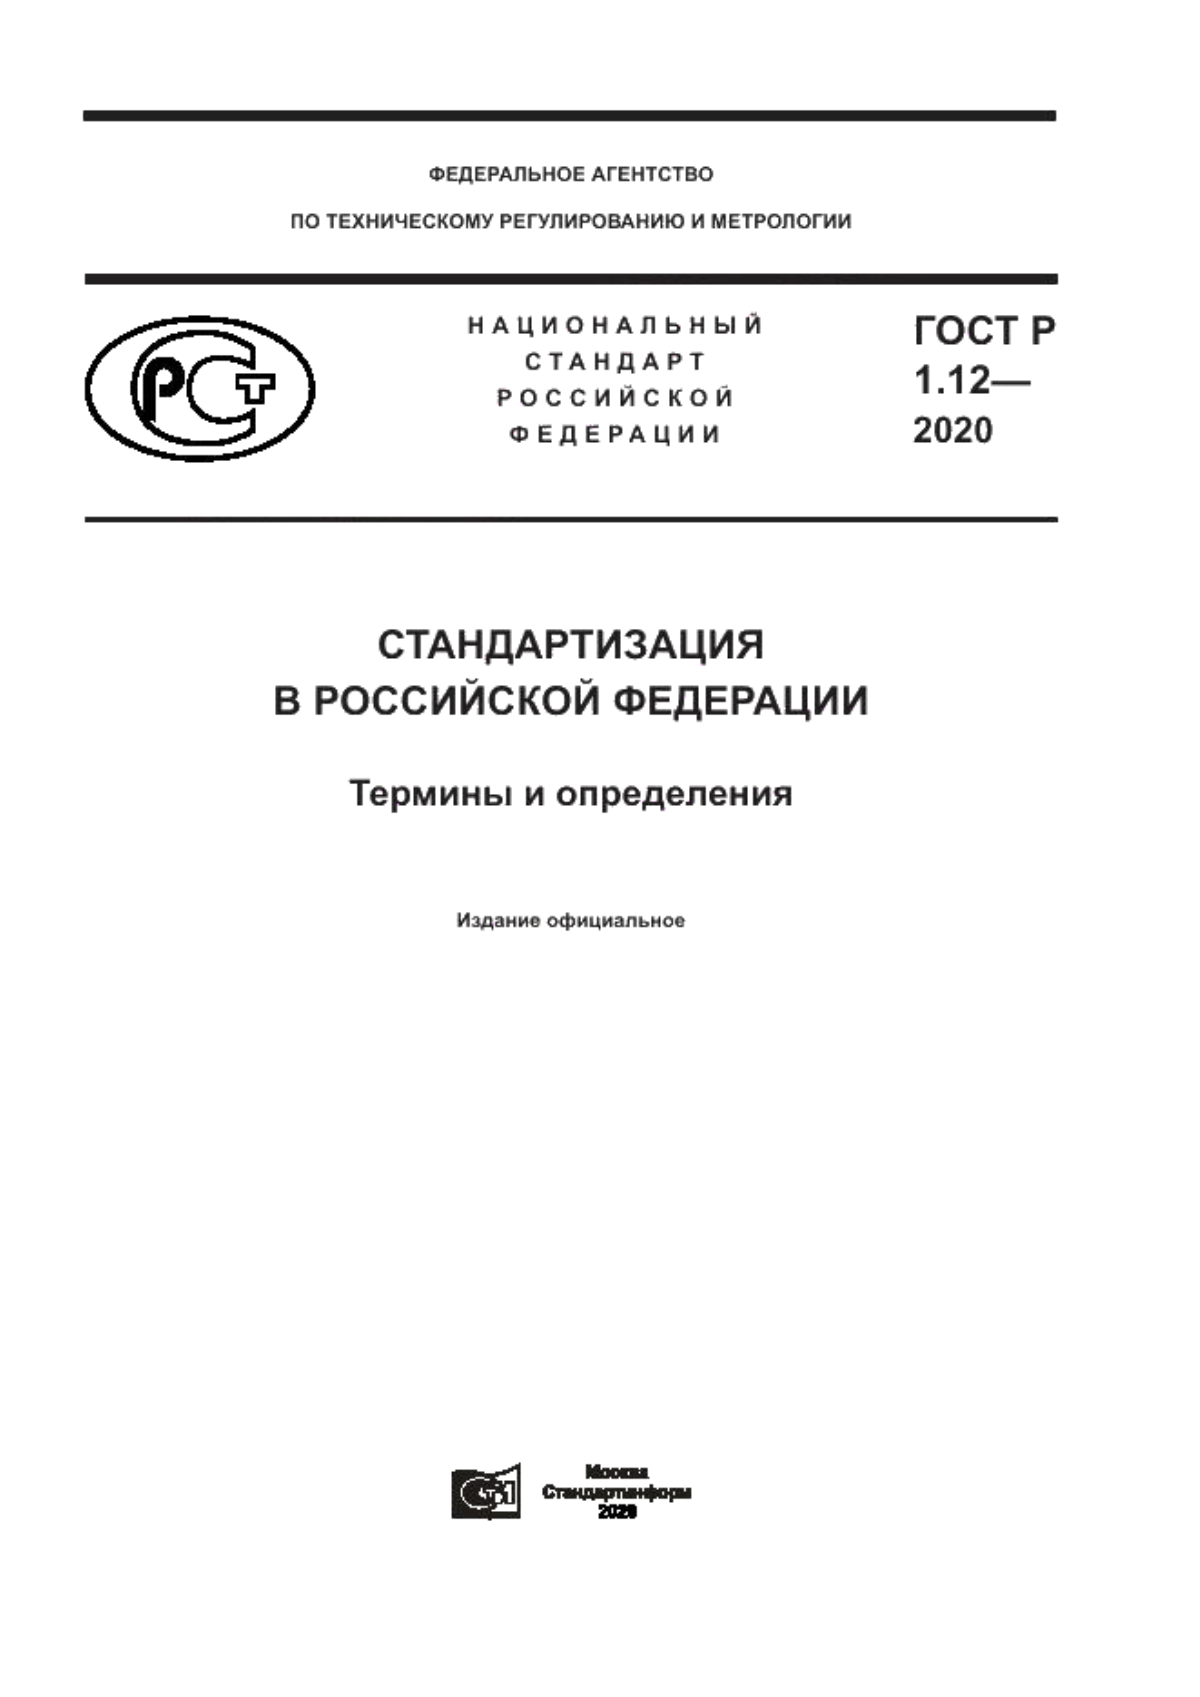 ГОСТ Р 1.12-2020 Стандартизация в Российской Федерации. Термины и определения